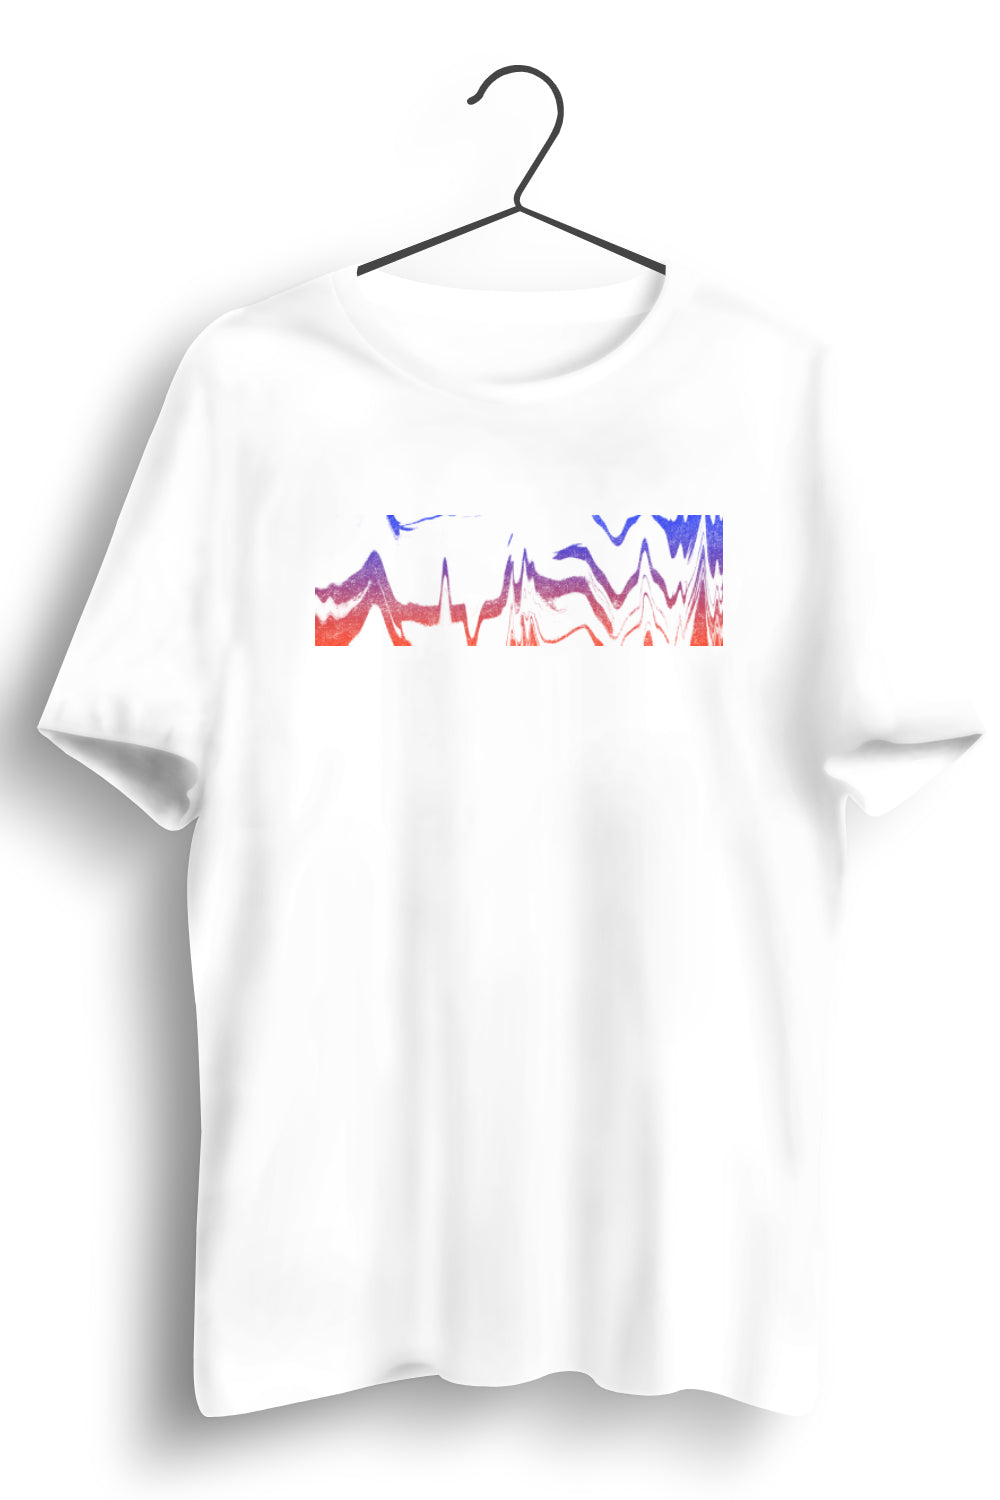 Techno Wave Graphic Printed White Tshirt